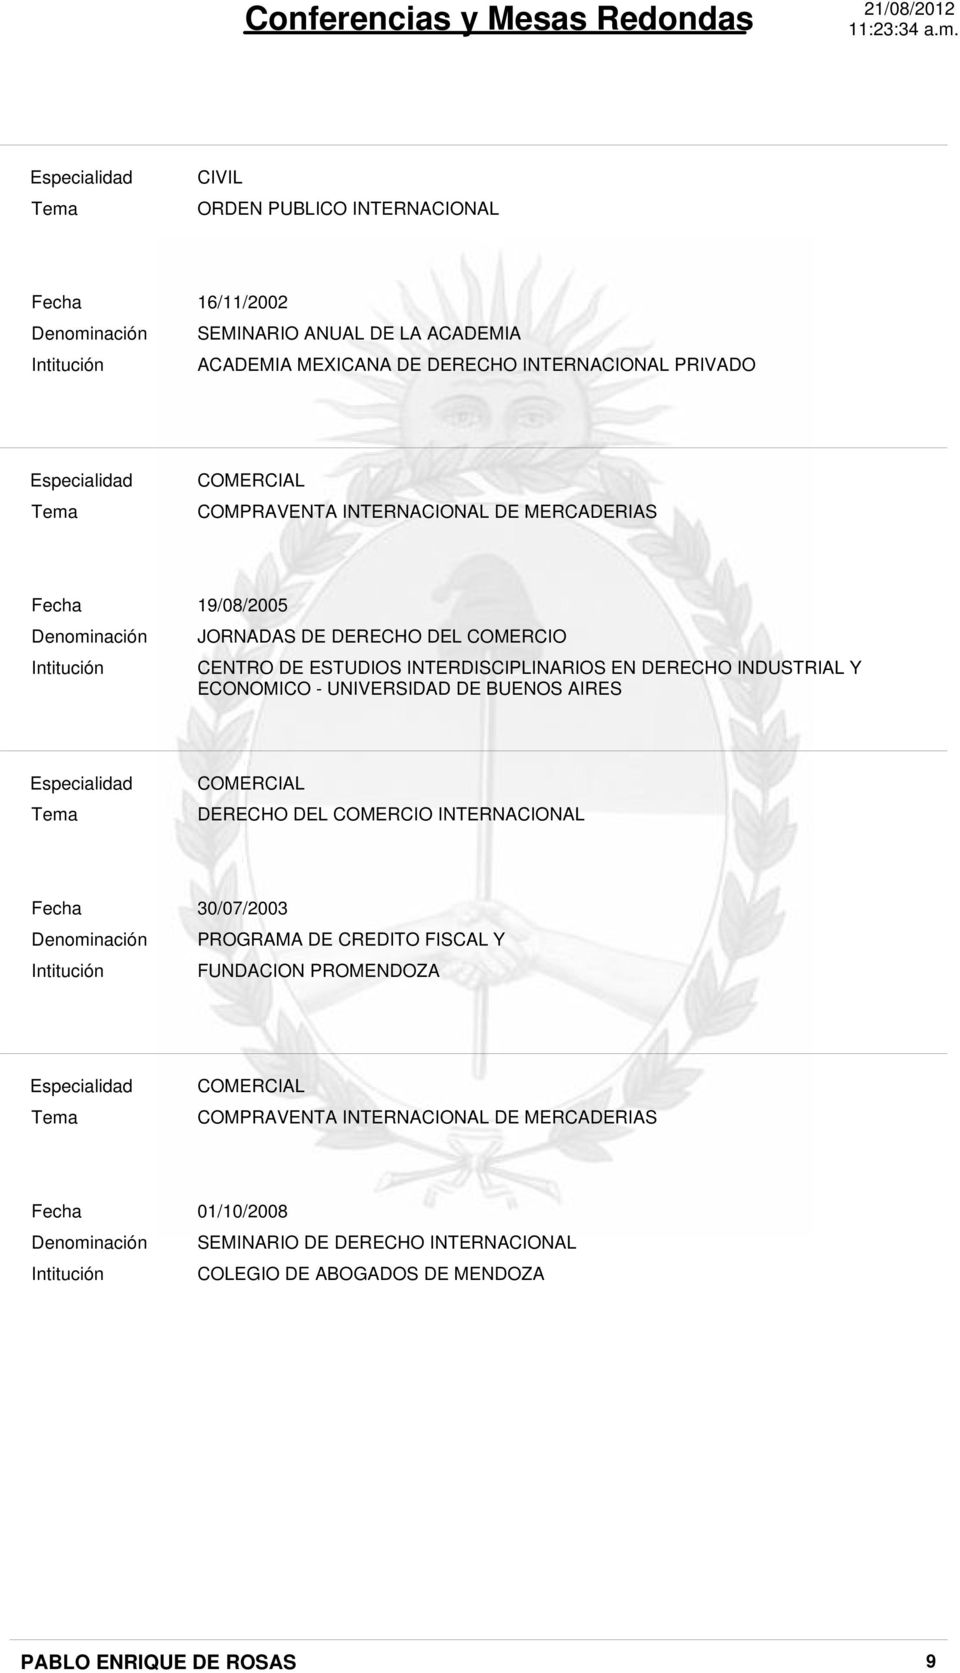 EN DERECHO INDUSTRIAL Y ECONOMICO - UNIVERSIDAD DE BUENOS AIRES DERECHO DEL COMERCIO INTERNACIONAL Intitución 30/07/2003 PROGRAMA DE CREDITO FISCAL Y CAPITACION DE LA SEPYME - IDR